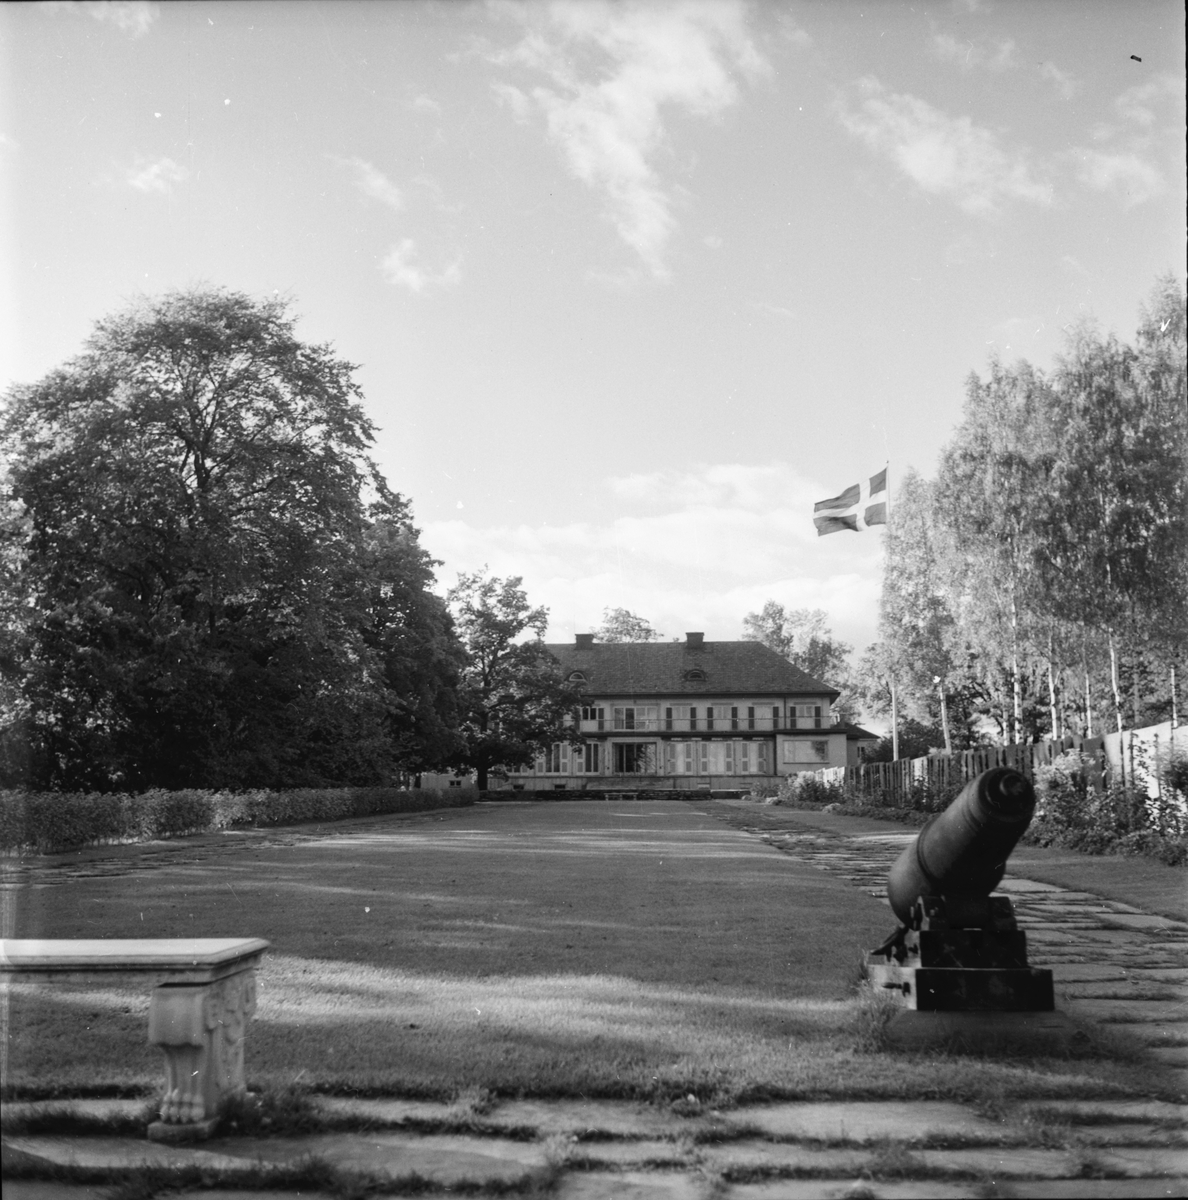 Kilafors bruks herrgård.
Oktober 1957